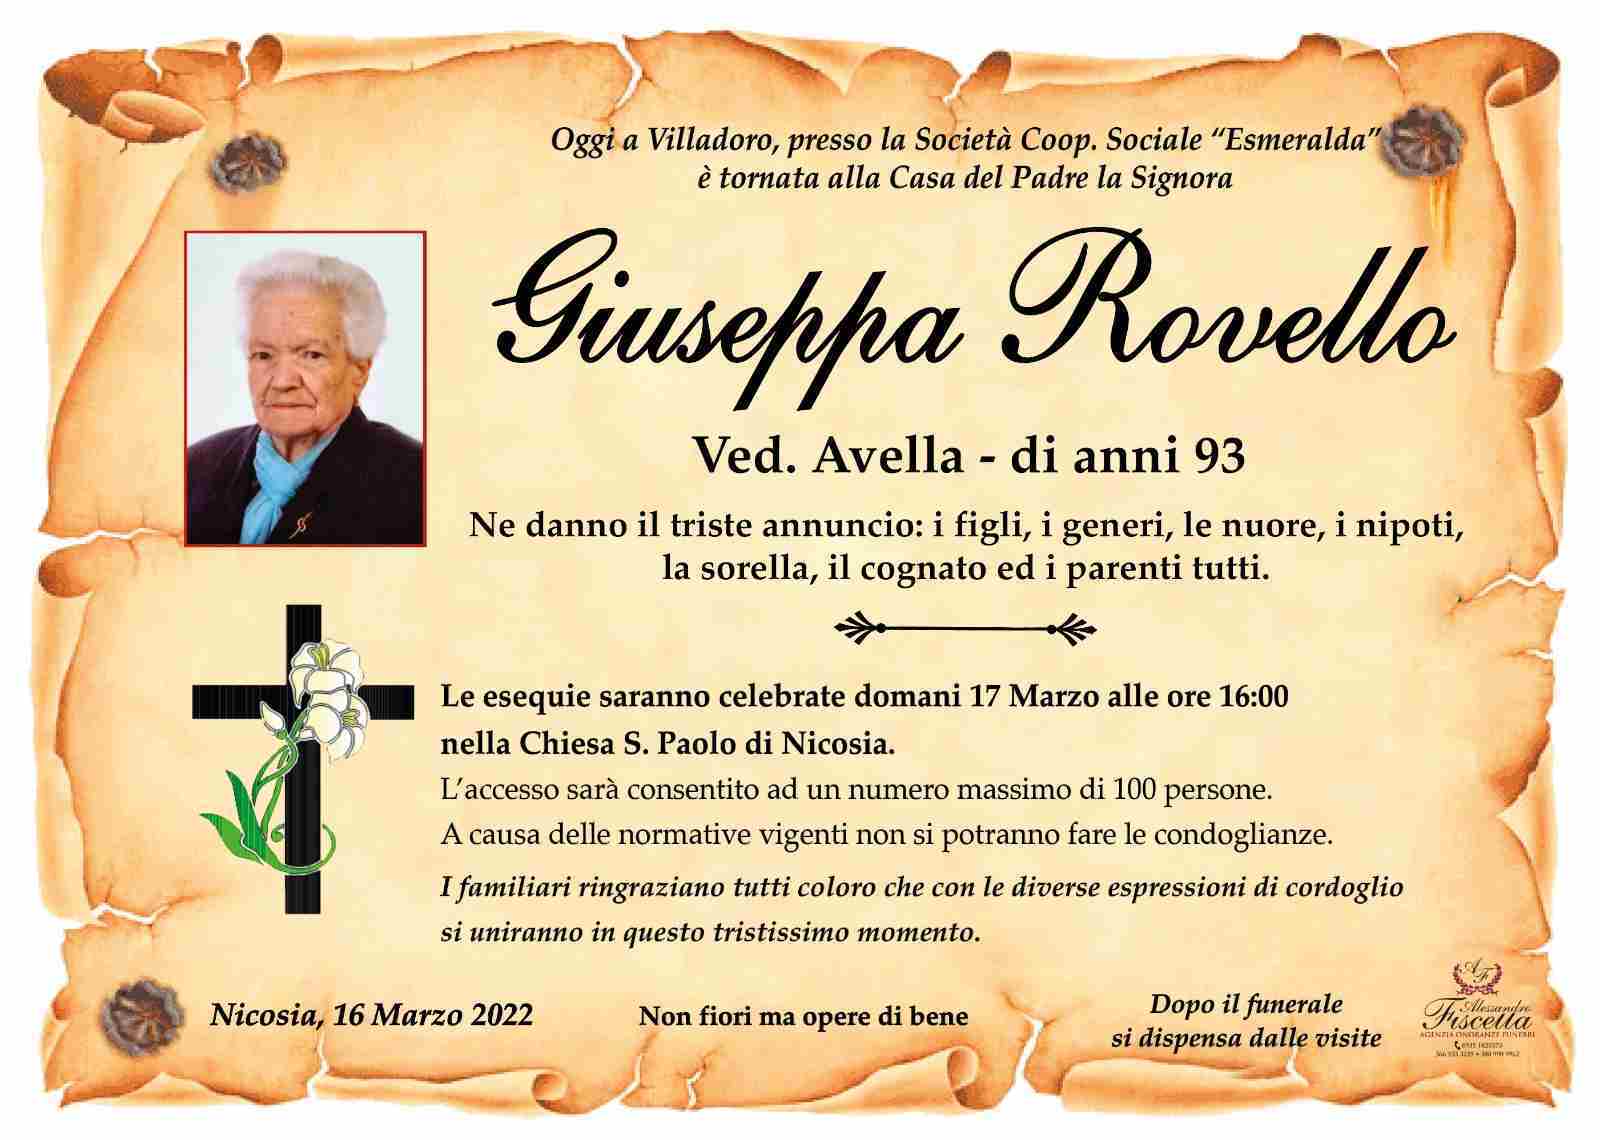 Giuseppa Rovello